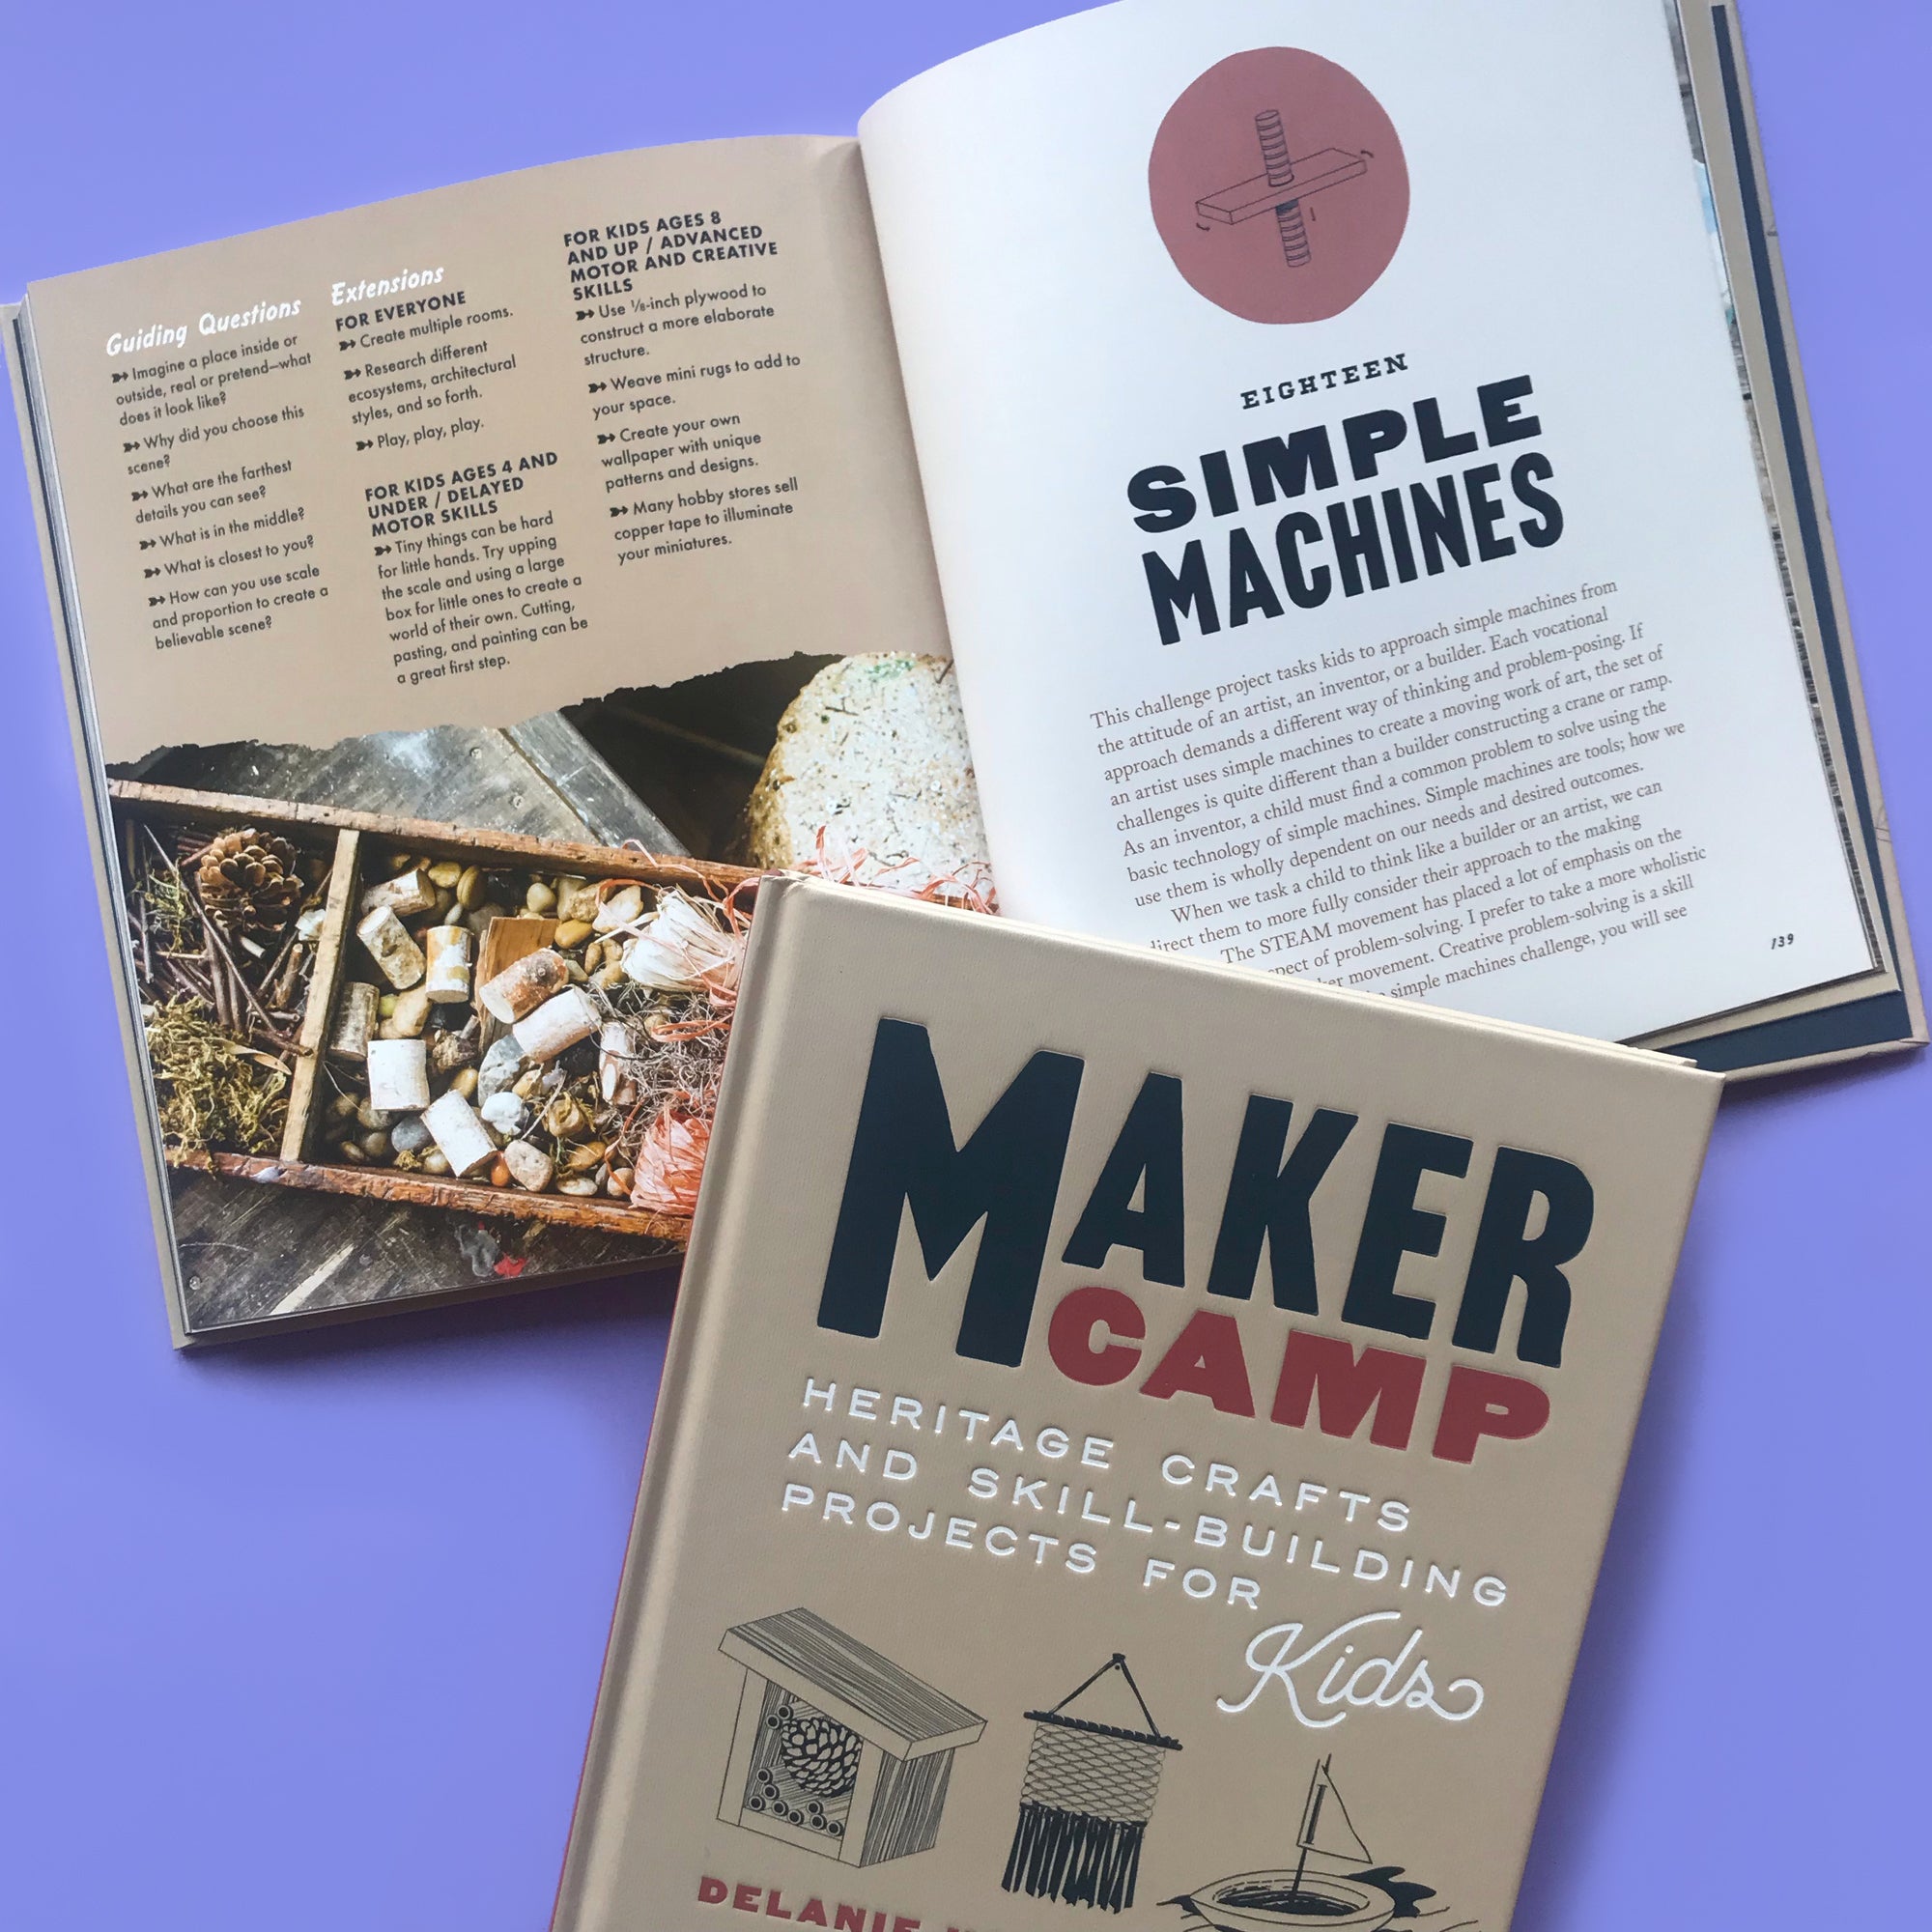 Maker Camp